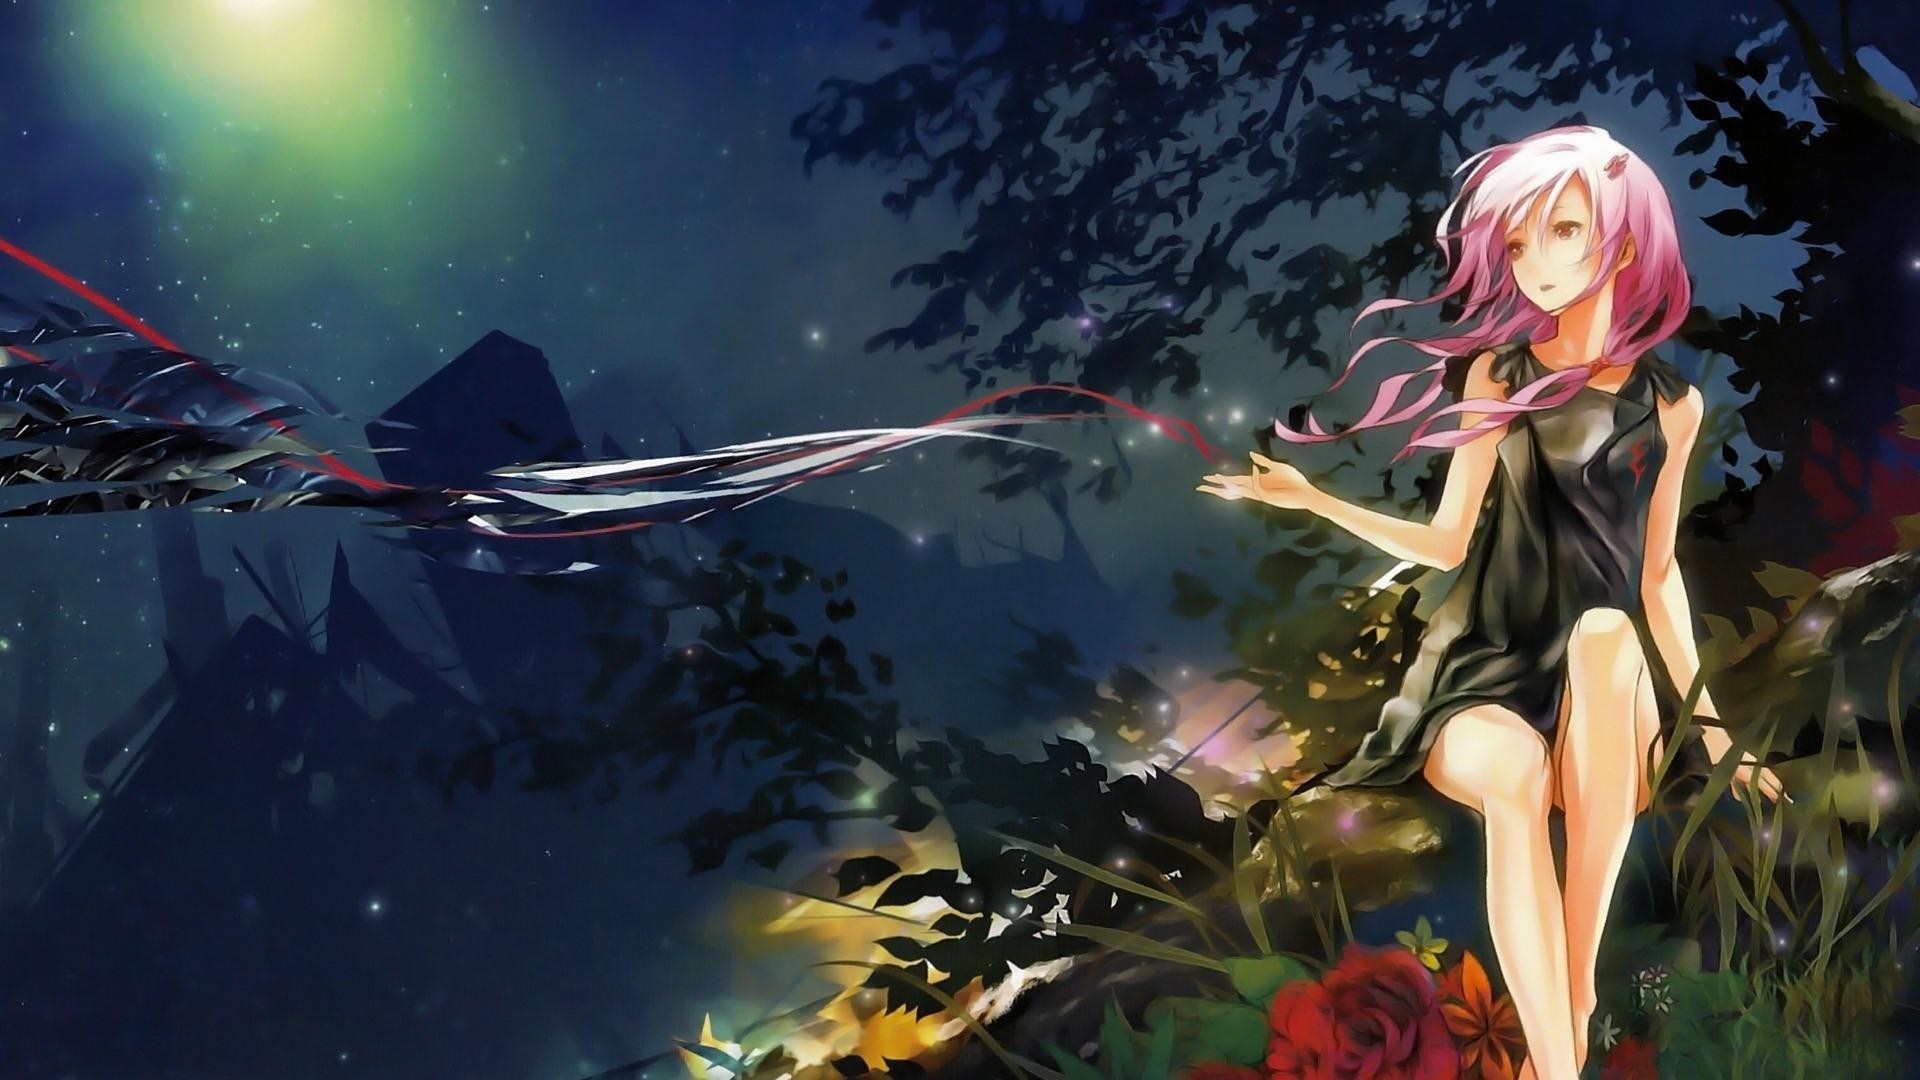 hinh nen anime cho desktop 9 - wallpaper free download